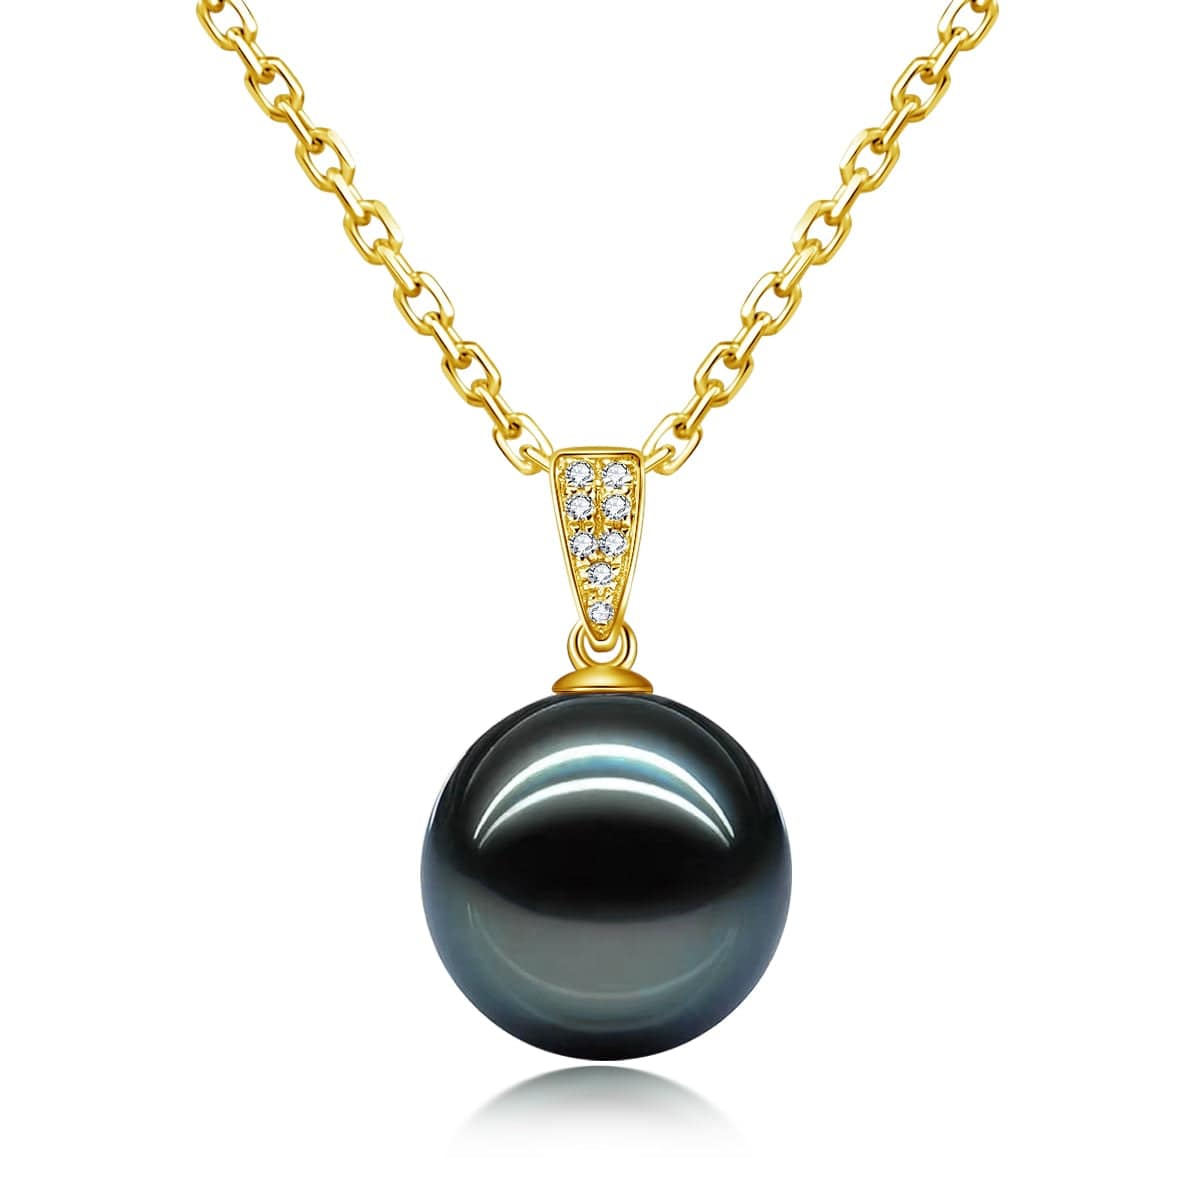 Comment porter un collier de perles noires ?